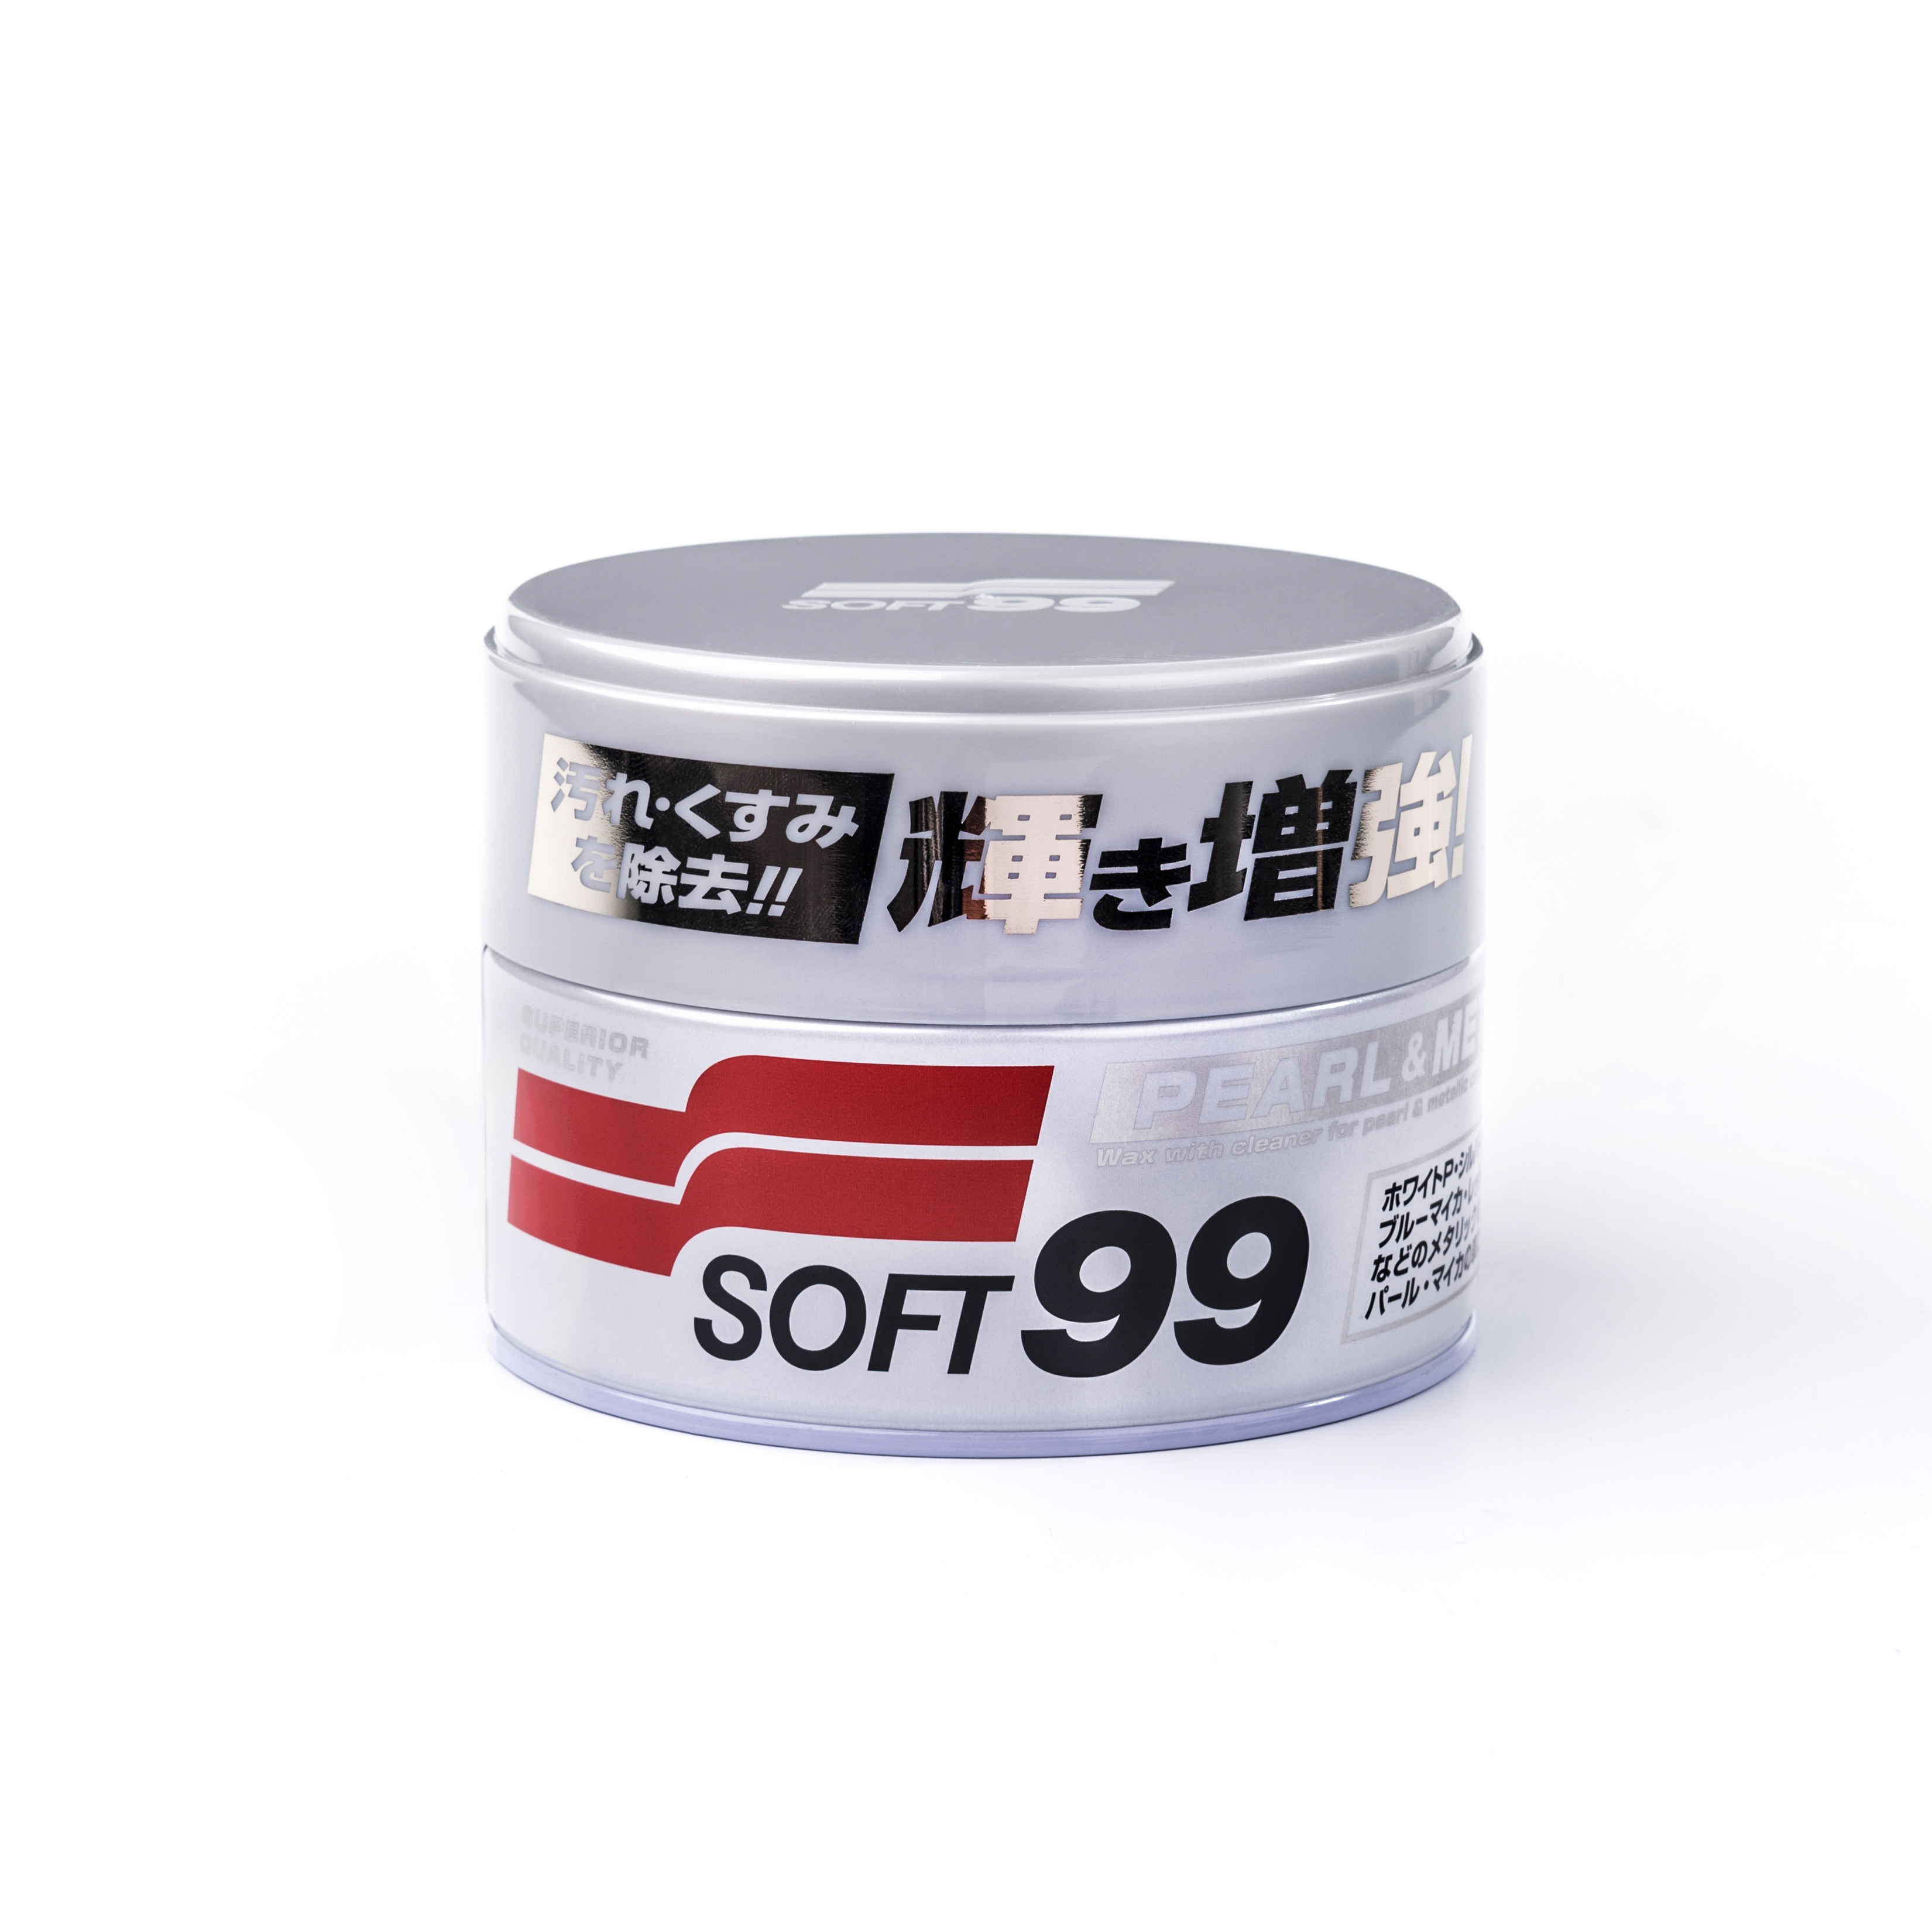 Bilvoks Soft99 Pearl&Metallic Soft Wax, 320 g, Soft99 Pearl&Metallic Soft Wax